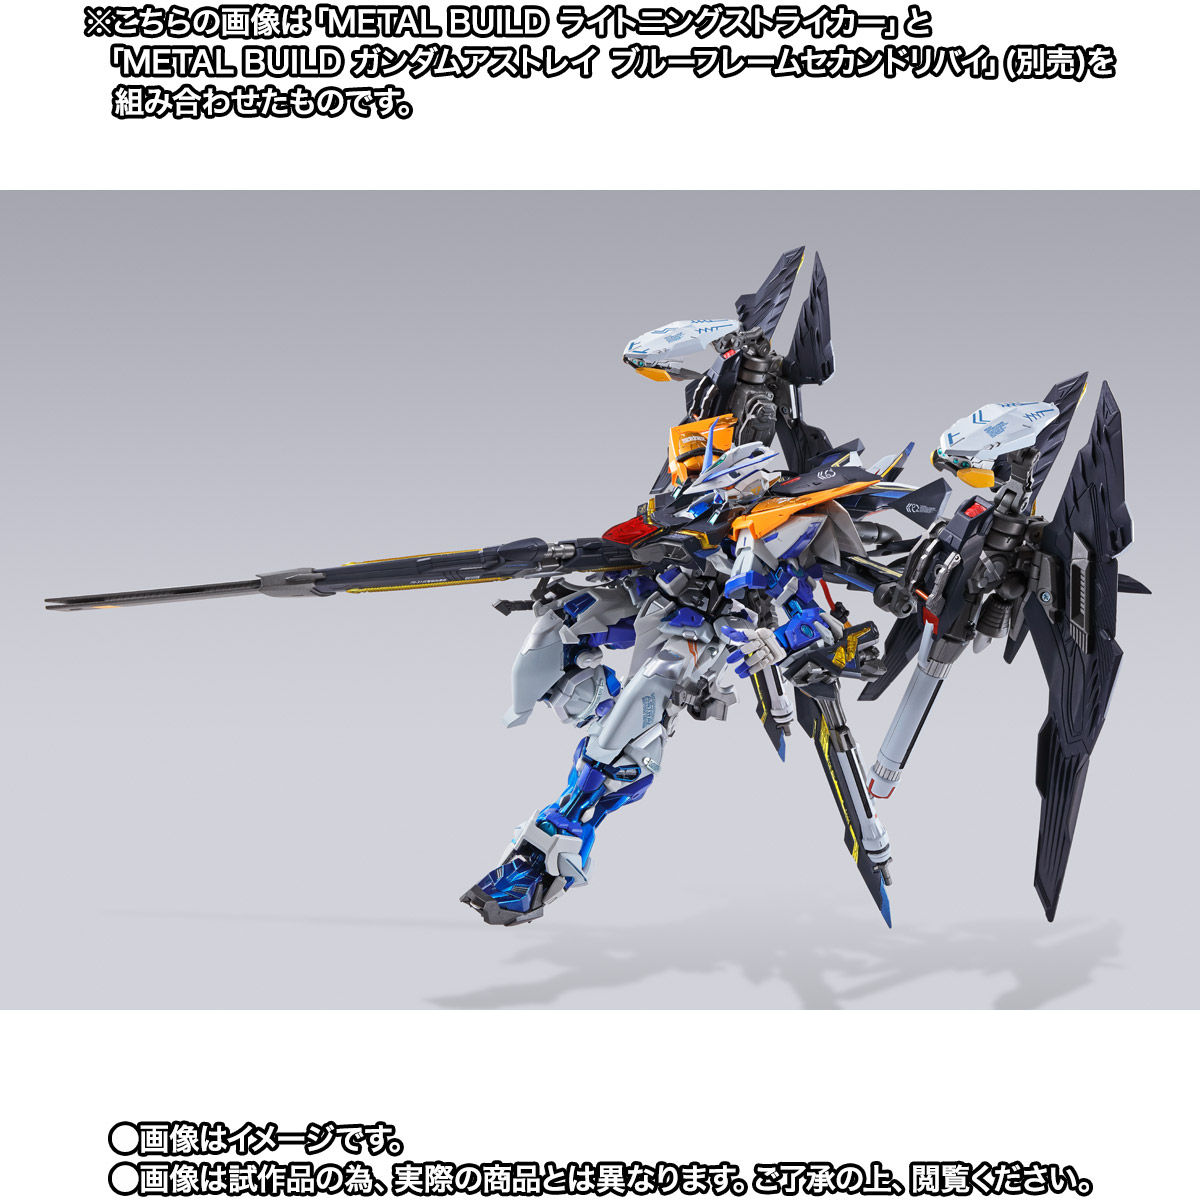 【限定販売】METAL BUILD『ライトニングストライカー』機動戦士ガンダムSEED 可動フィギュア-009